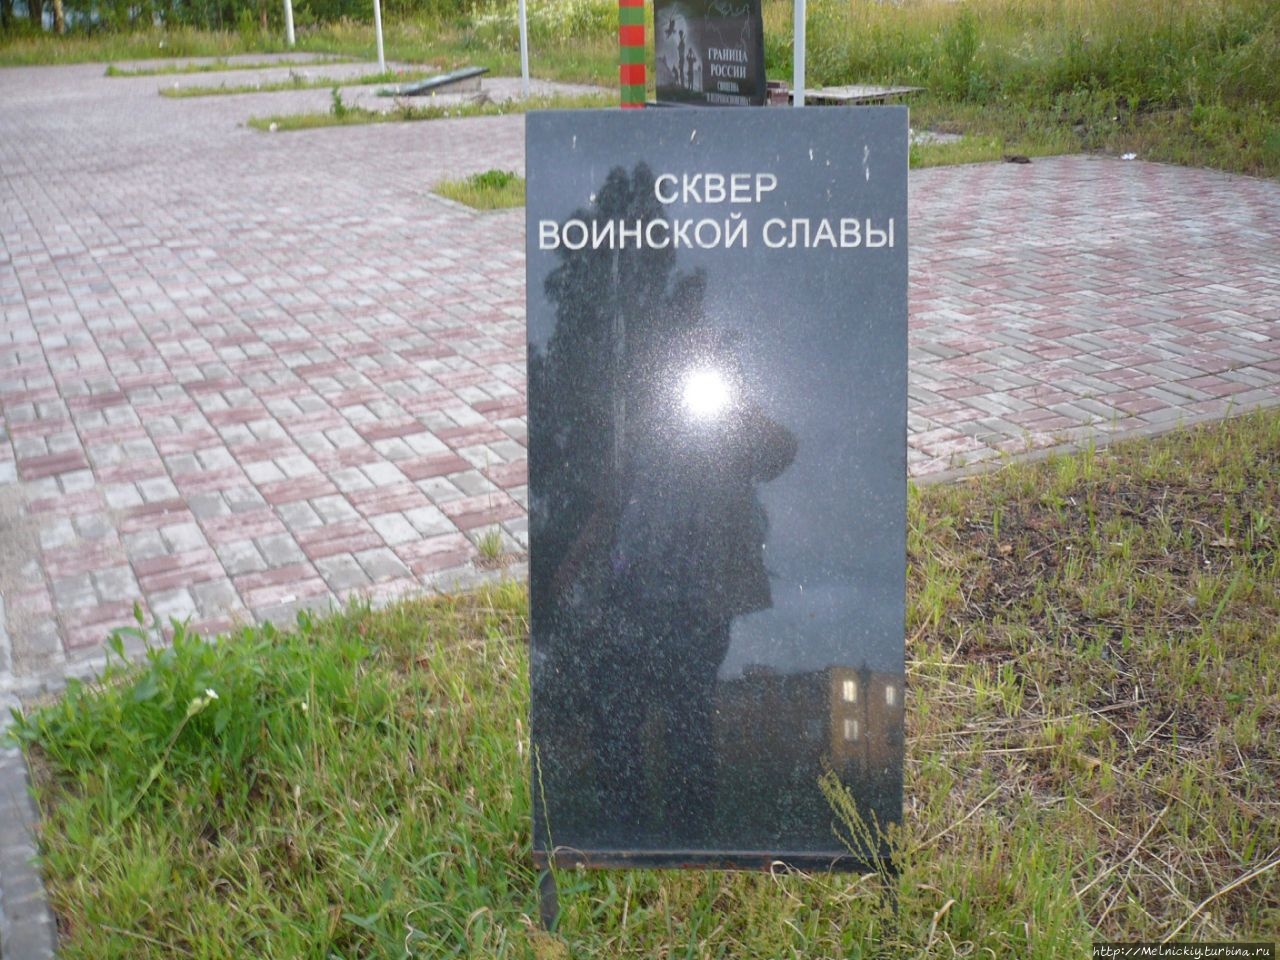 Сквер воинской славы Кондопога, Россия